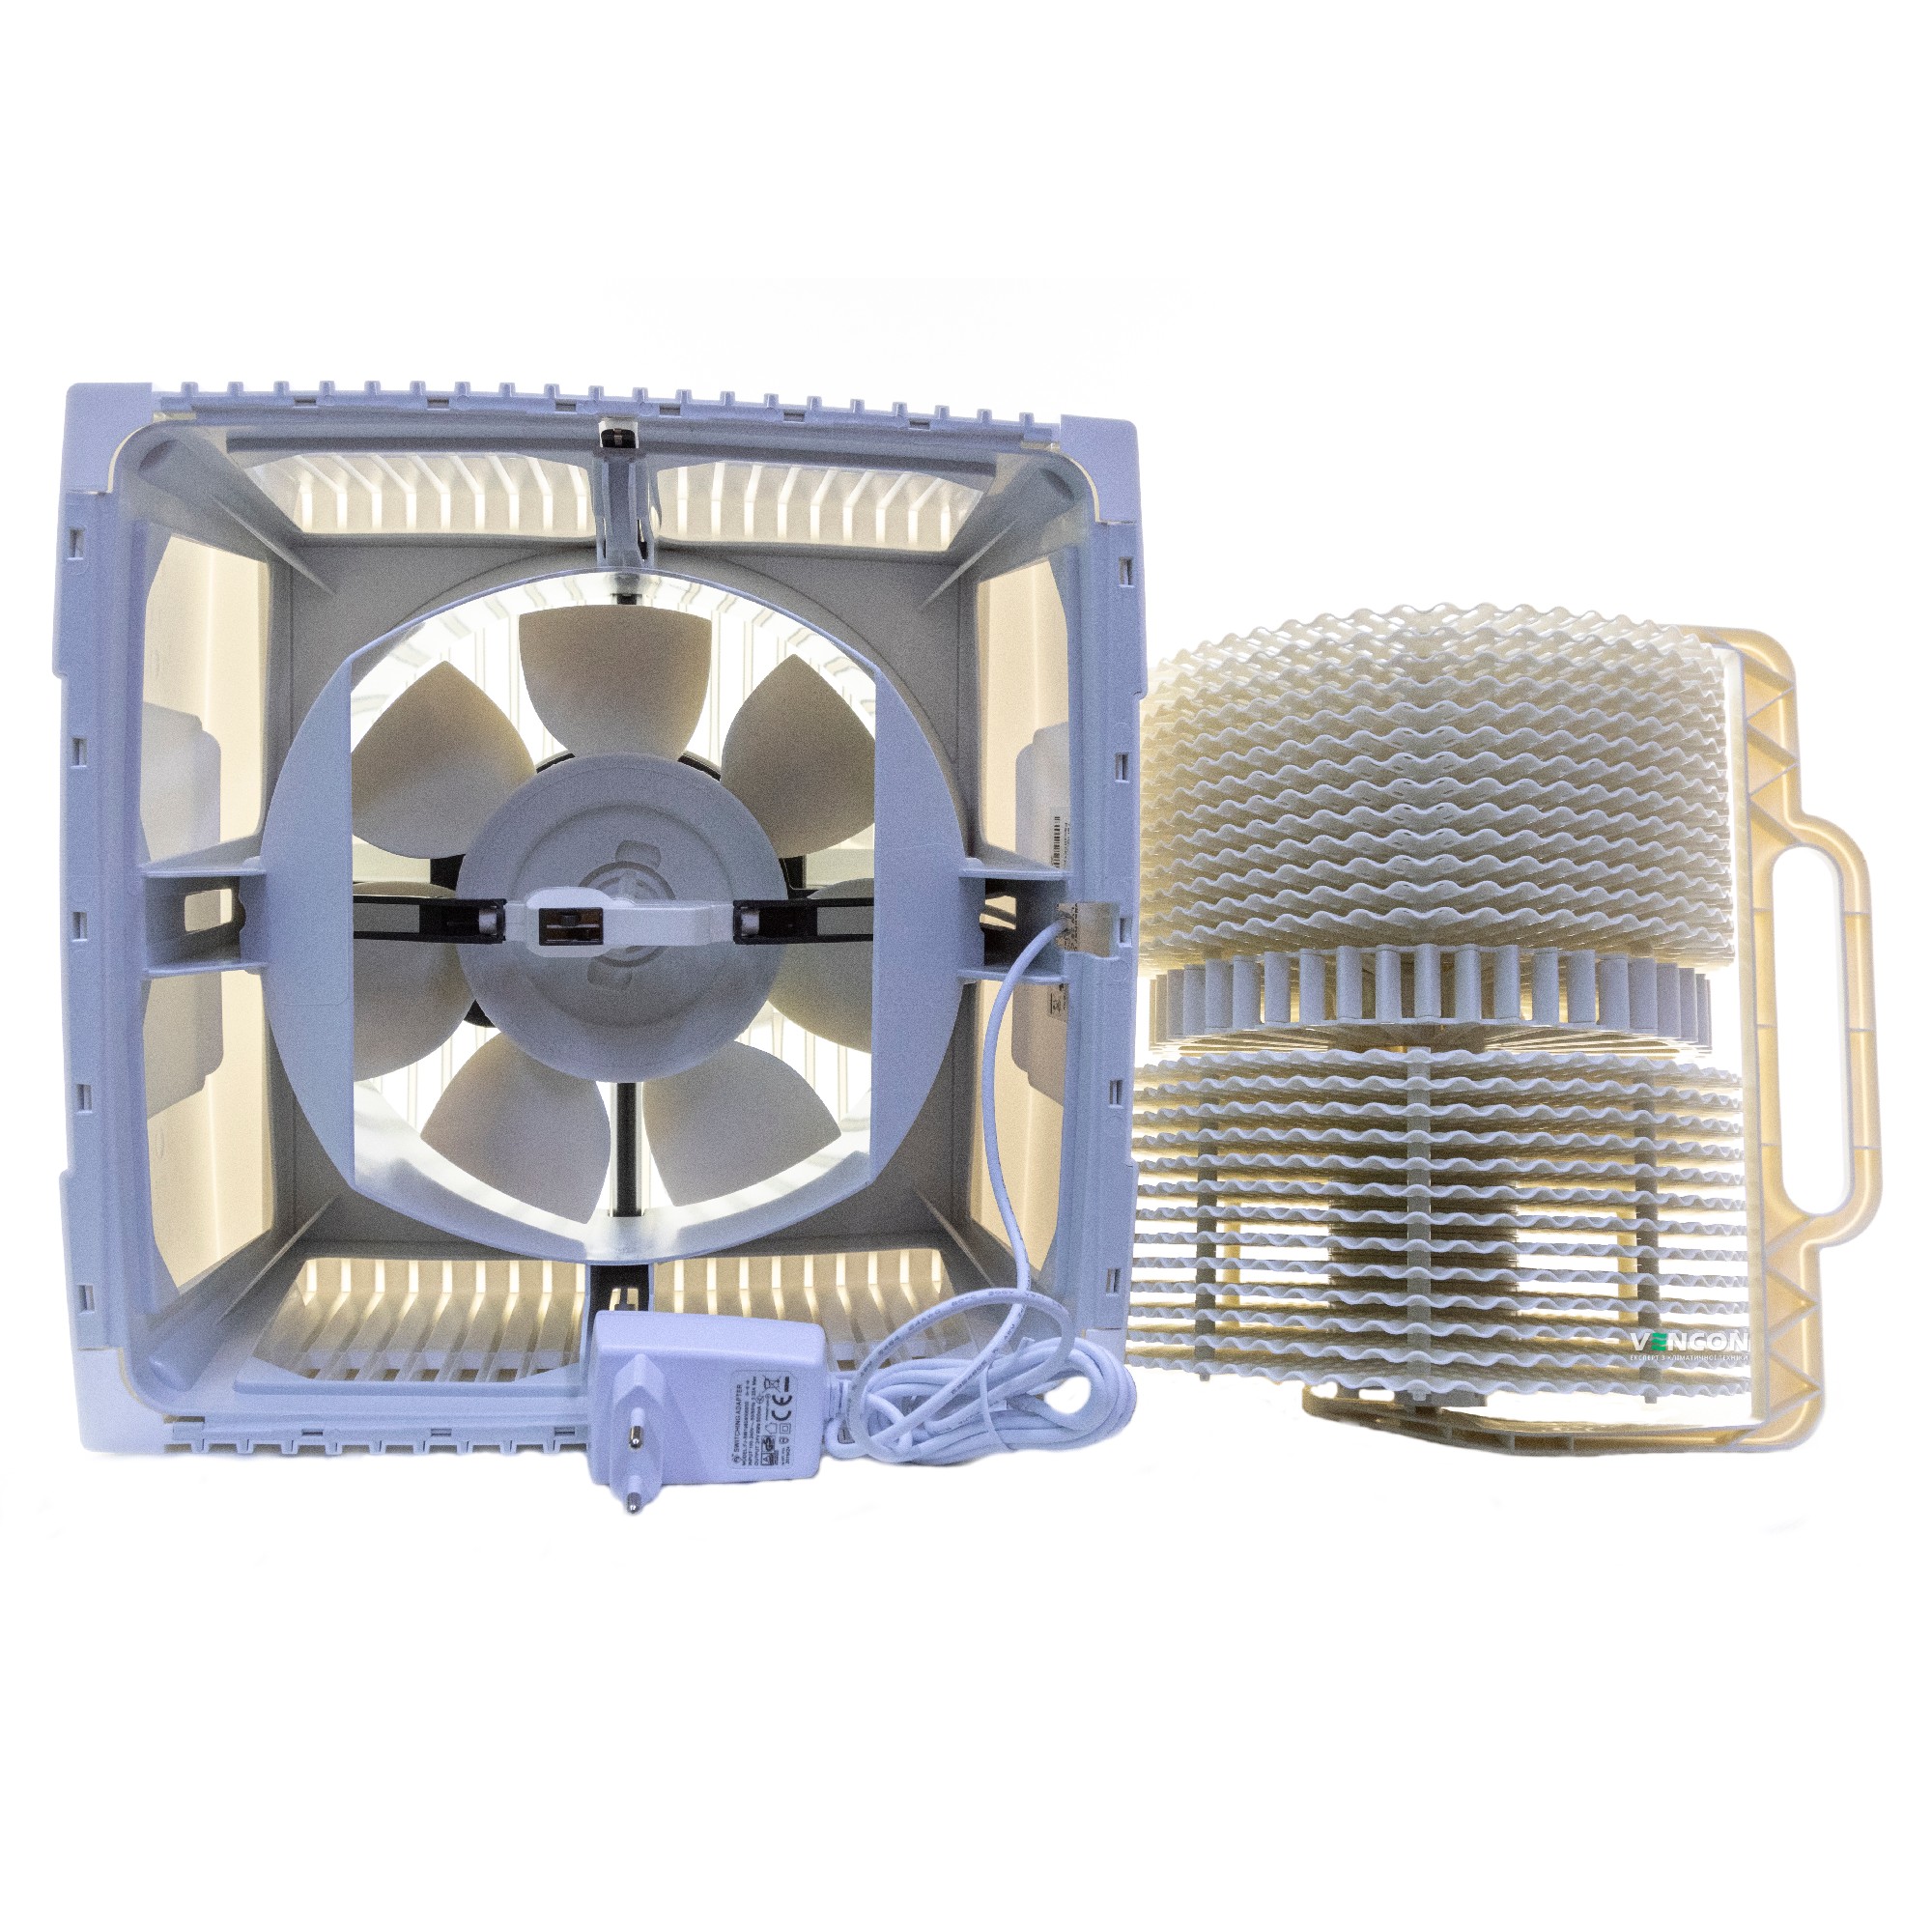 Очищувач повітря Venta LW25 Comfort plus White характеристики - фотографія 7